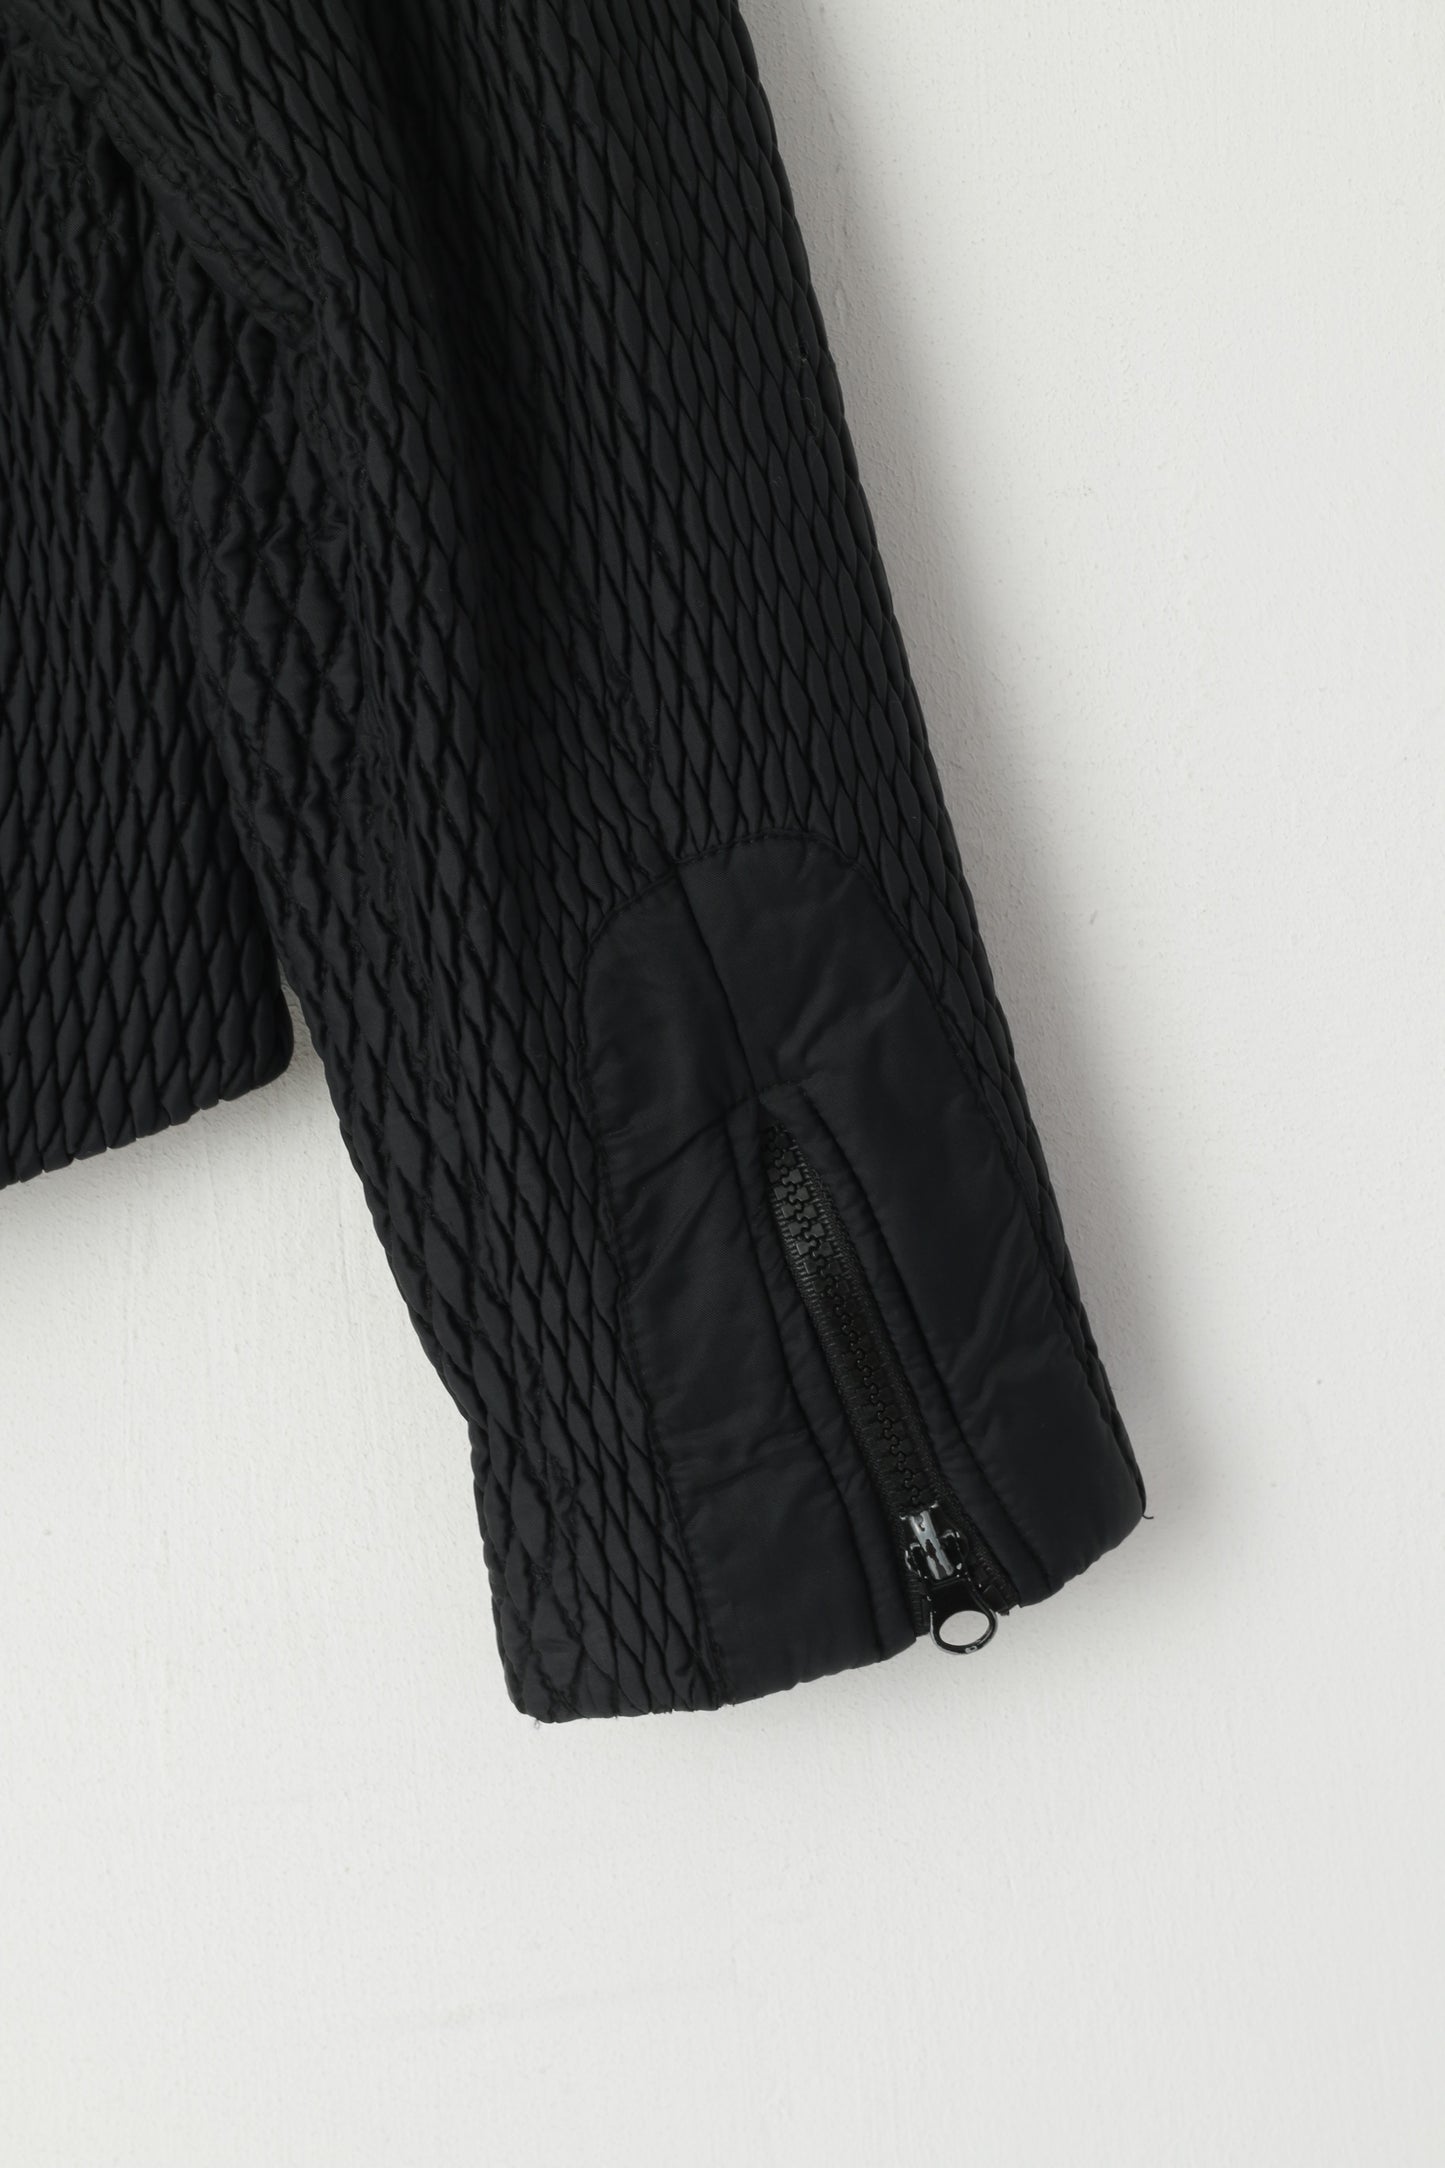 Alpraush Women L Jacket Black Full Zipper Swiss Nylon Waterproof Crinkled Outdoor Top